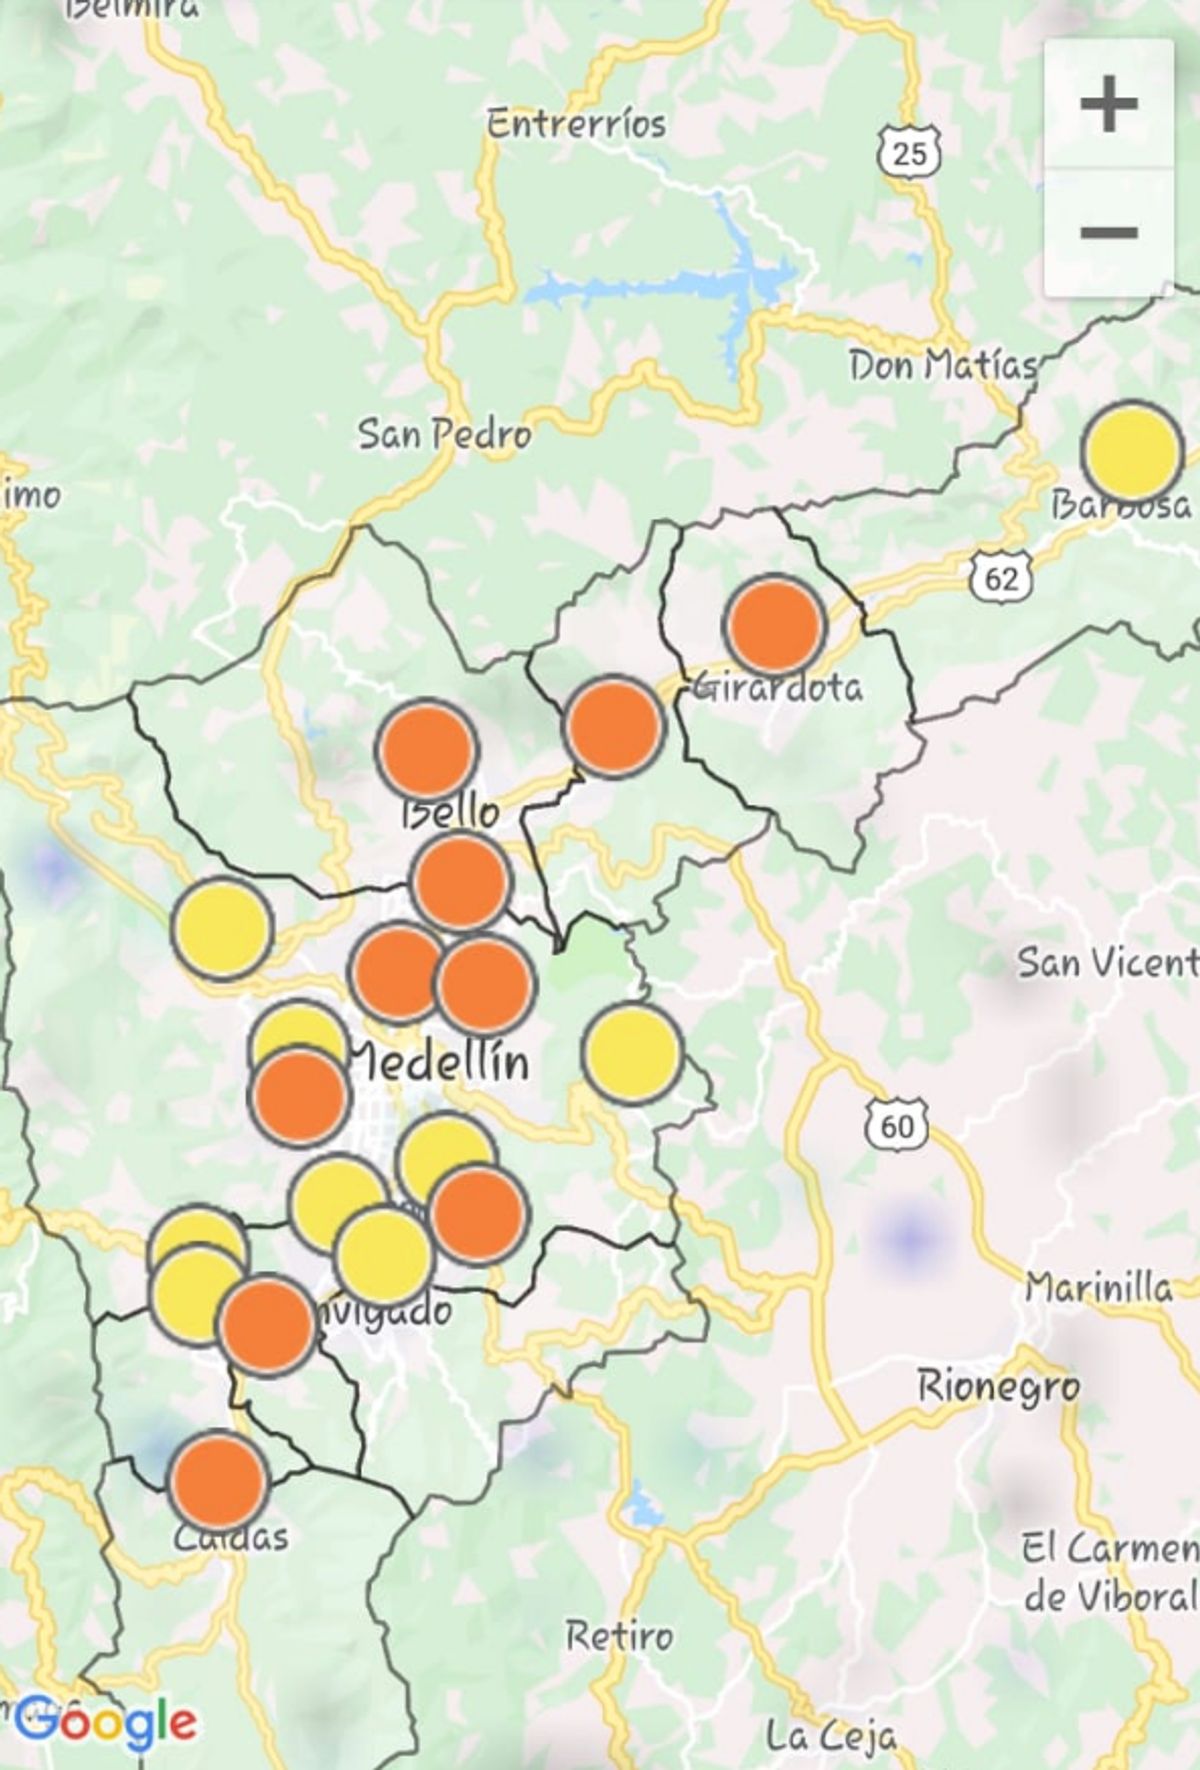 Disminución de partículas contaminantes en el aire de Medellín